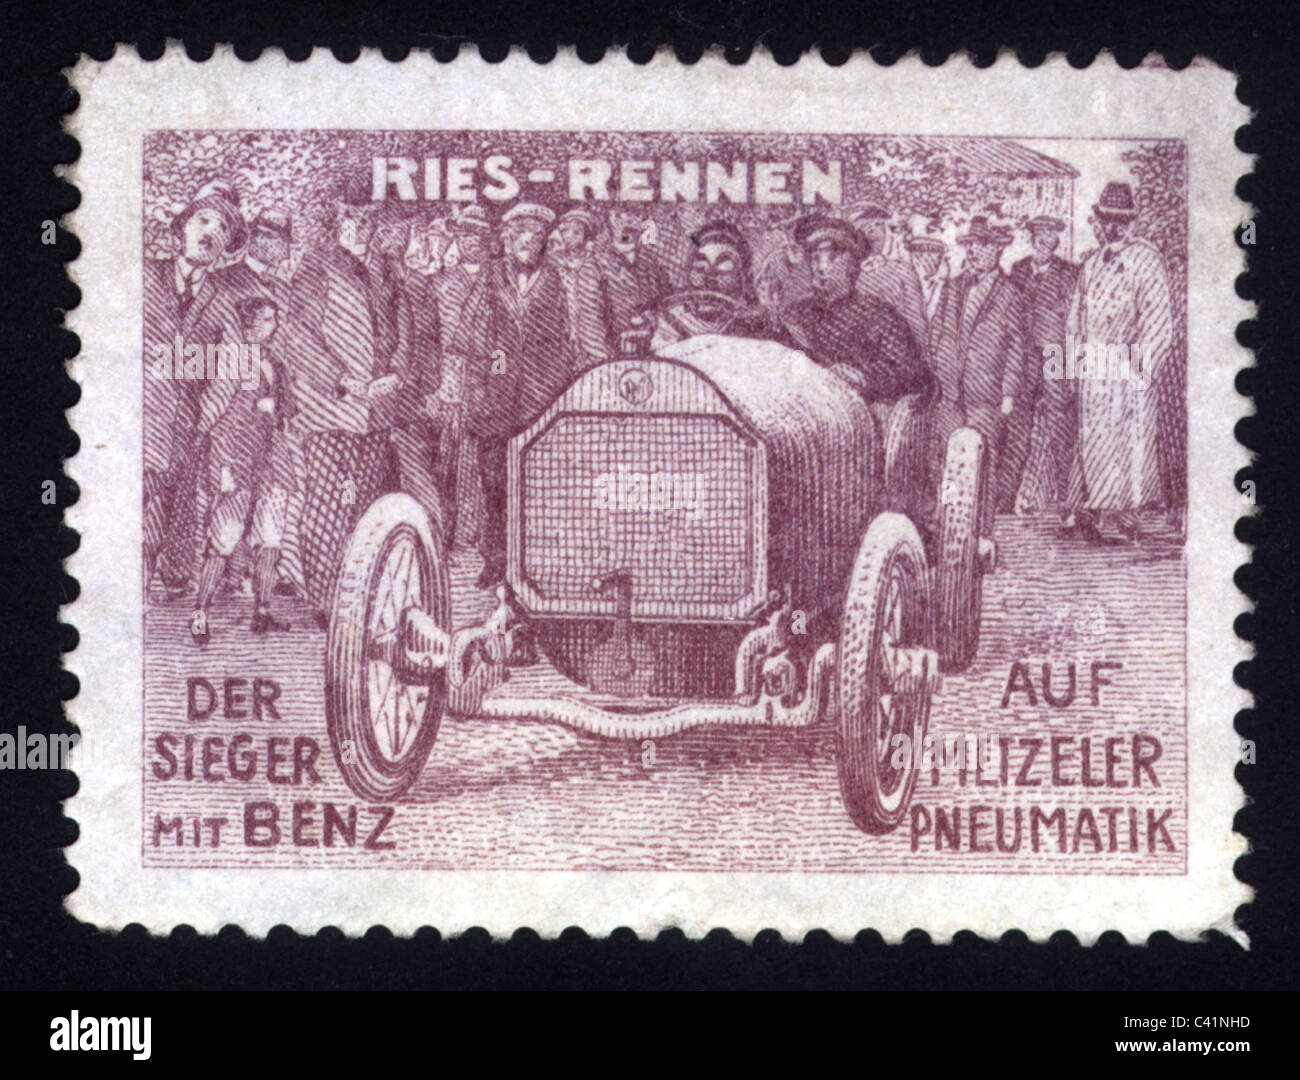 Pubblicità, automobili, accessori, Mercedes Benz con pneumatici Metzeler Pneumatik, francobollo poster, circa 1910, diritti aggiuntivi-clearences-non disponibile Foto Stock